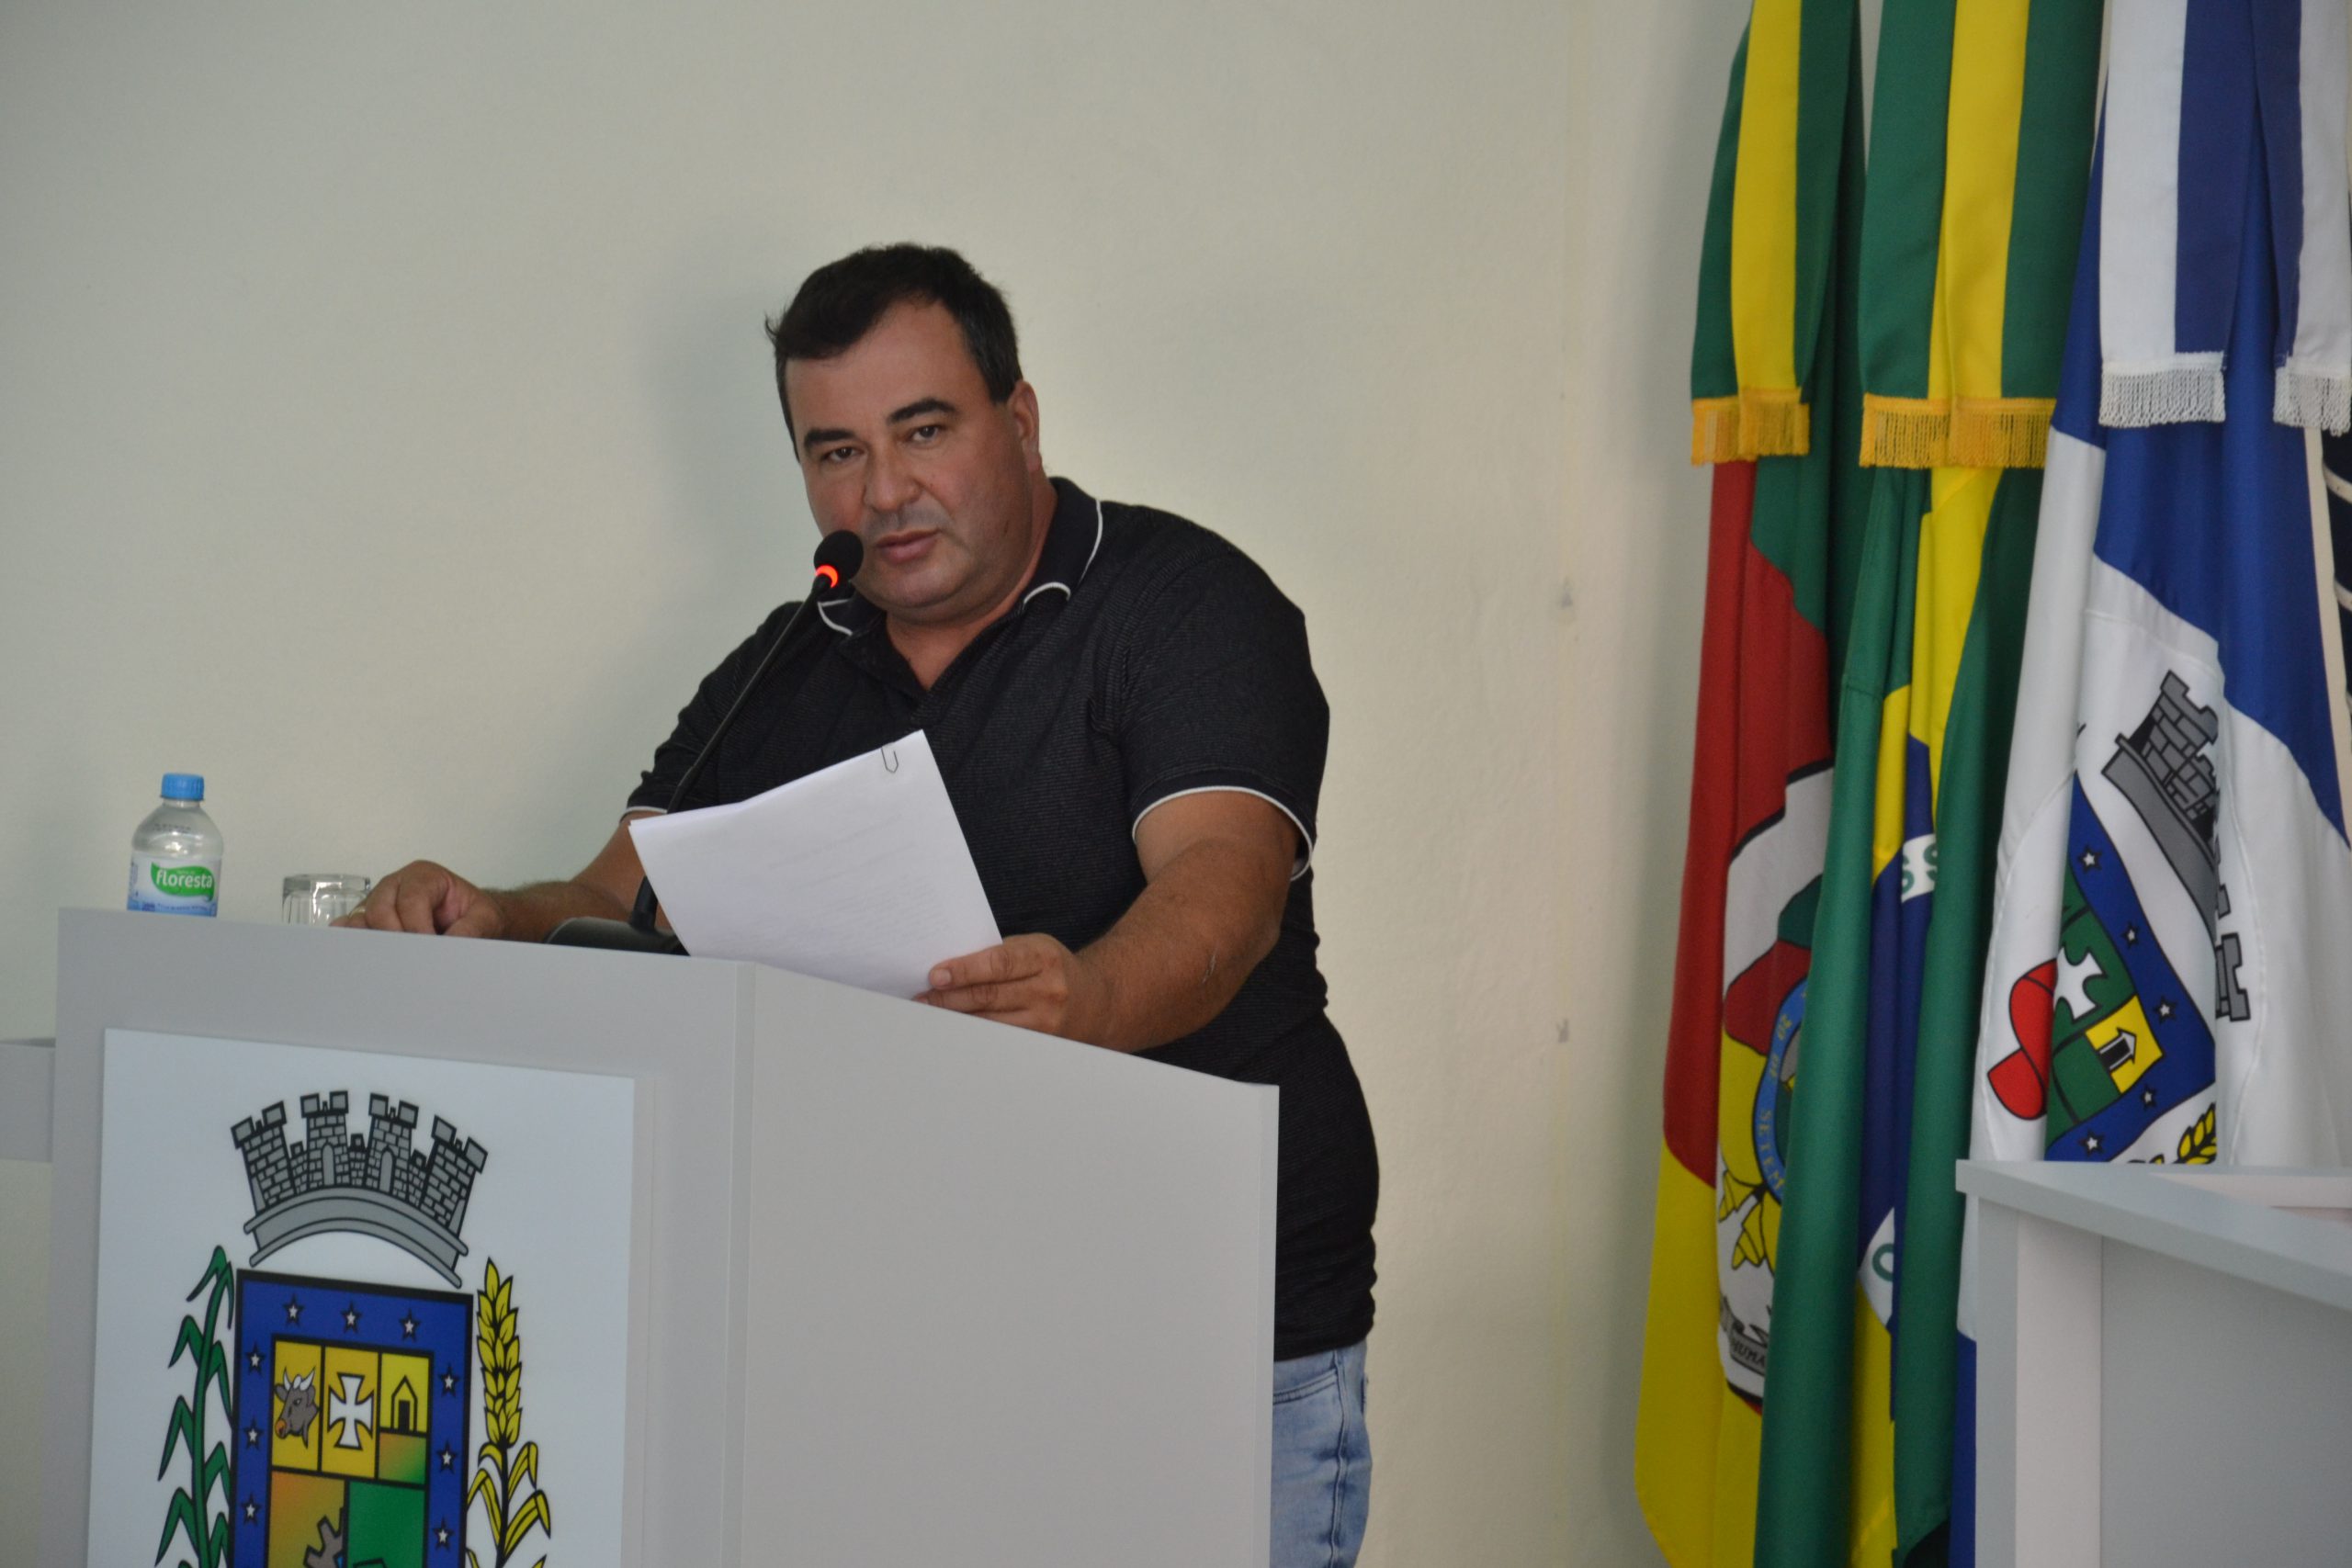 Bacana indica que sejam feitas avaliações mensais das ações da saúde no município